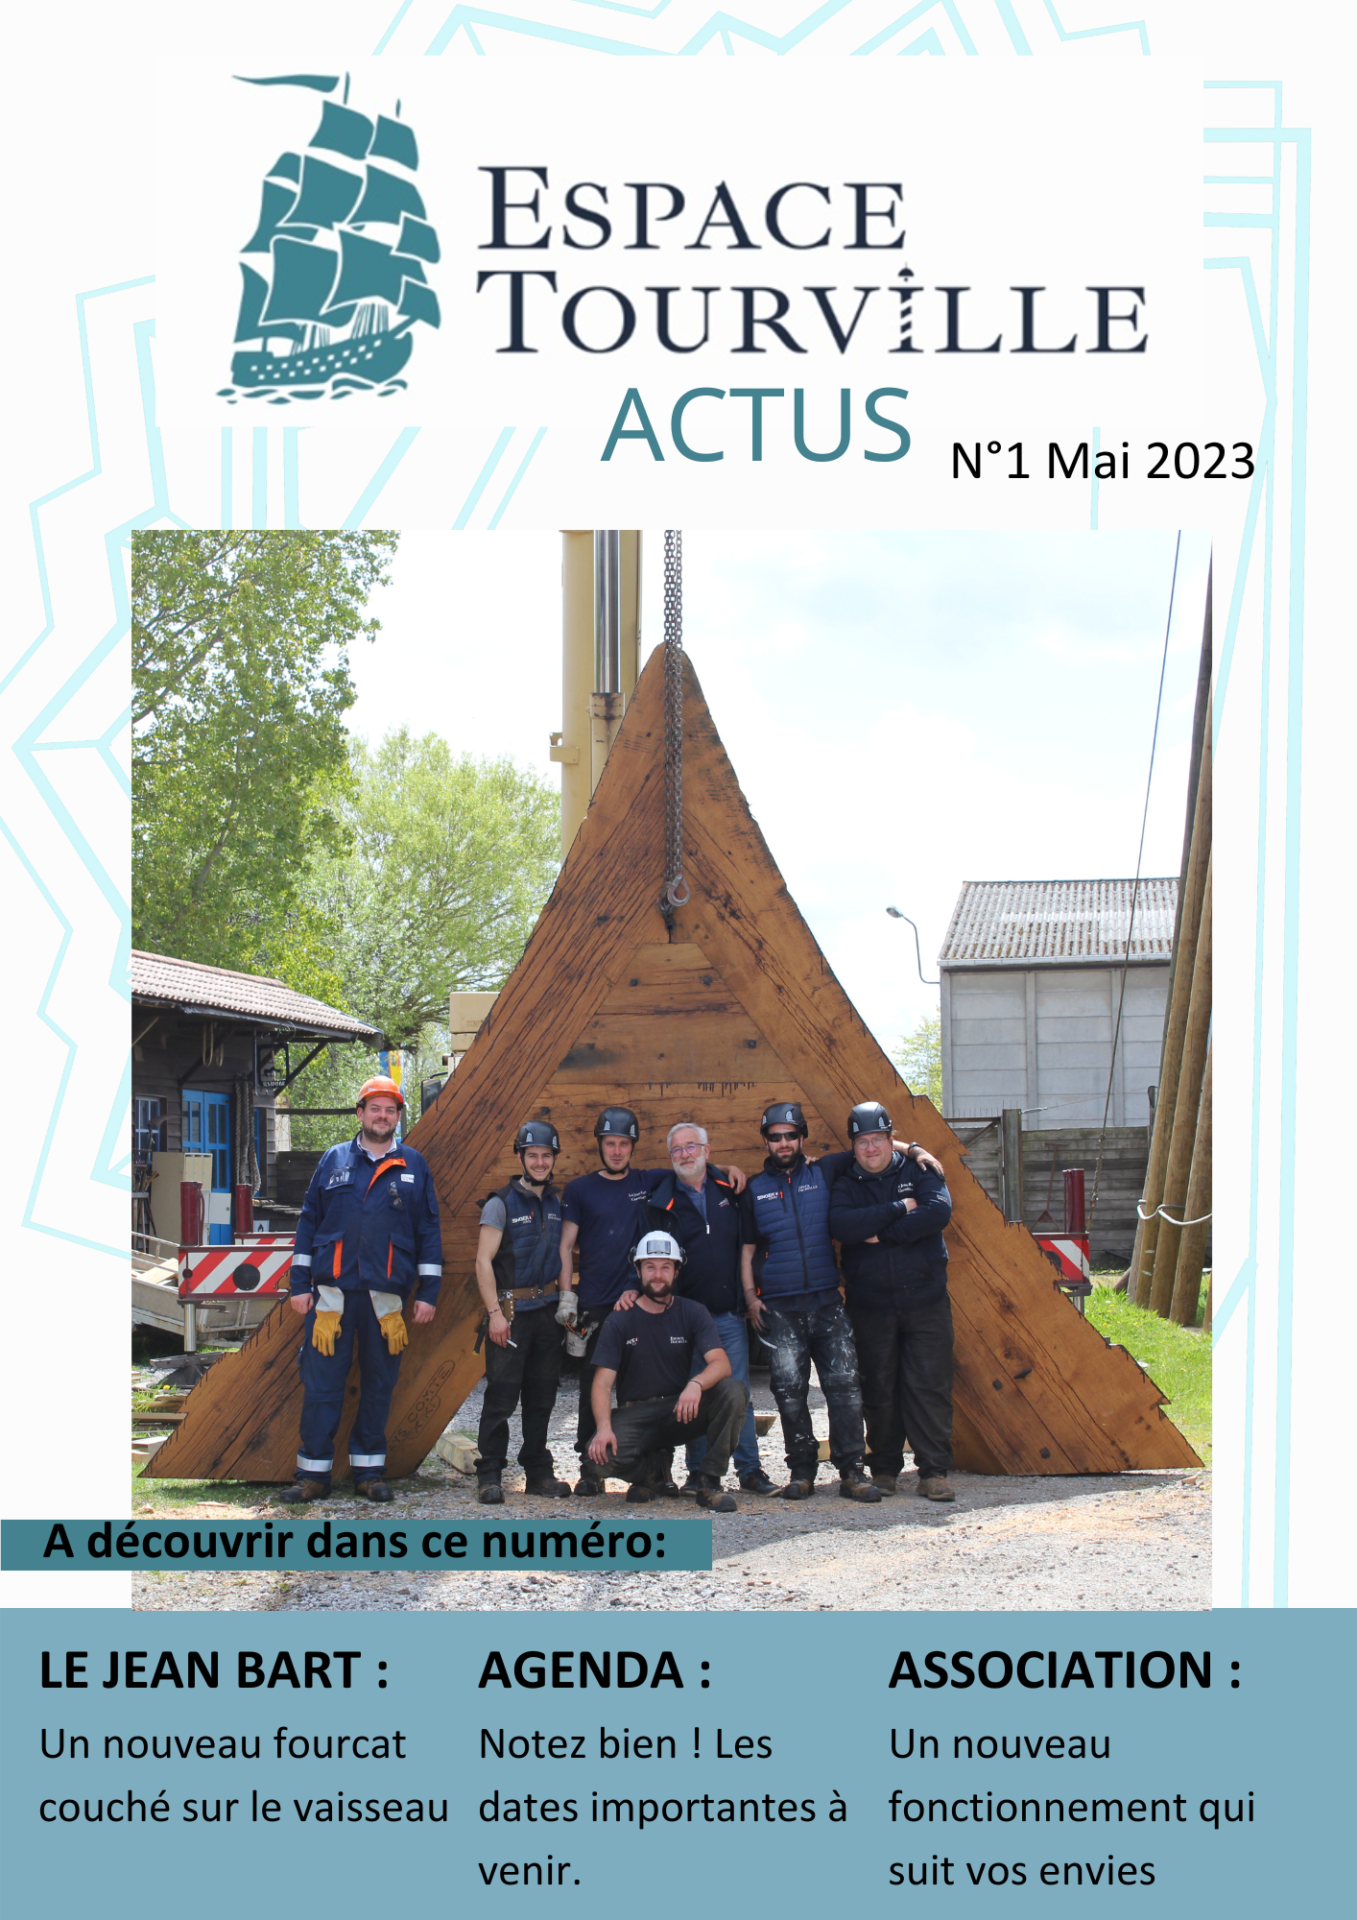 Tourville Actu N°1